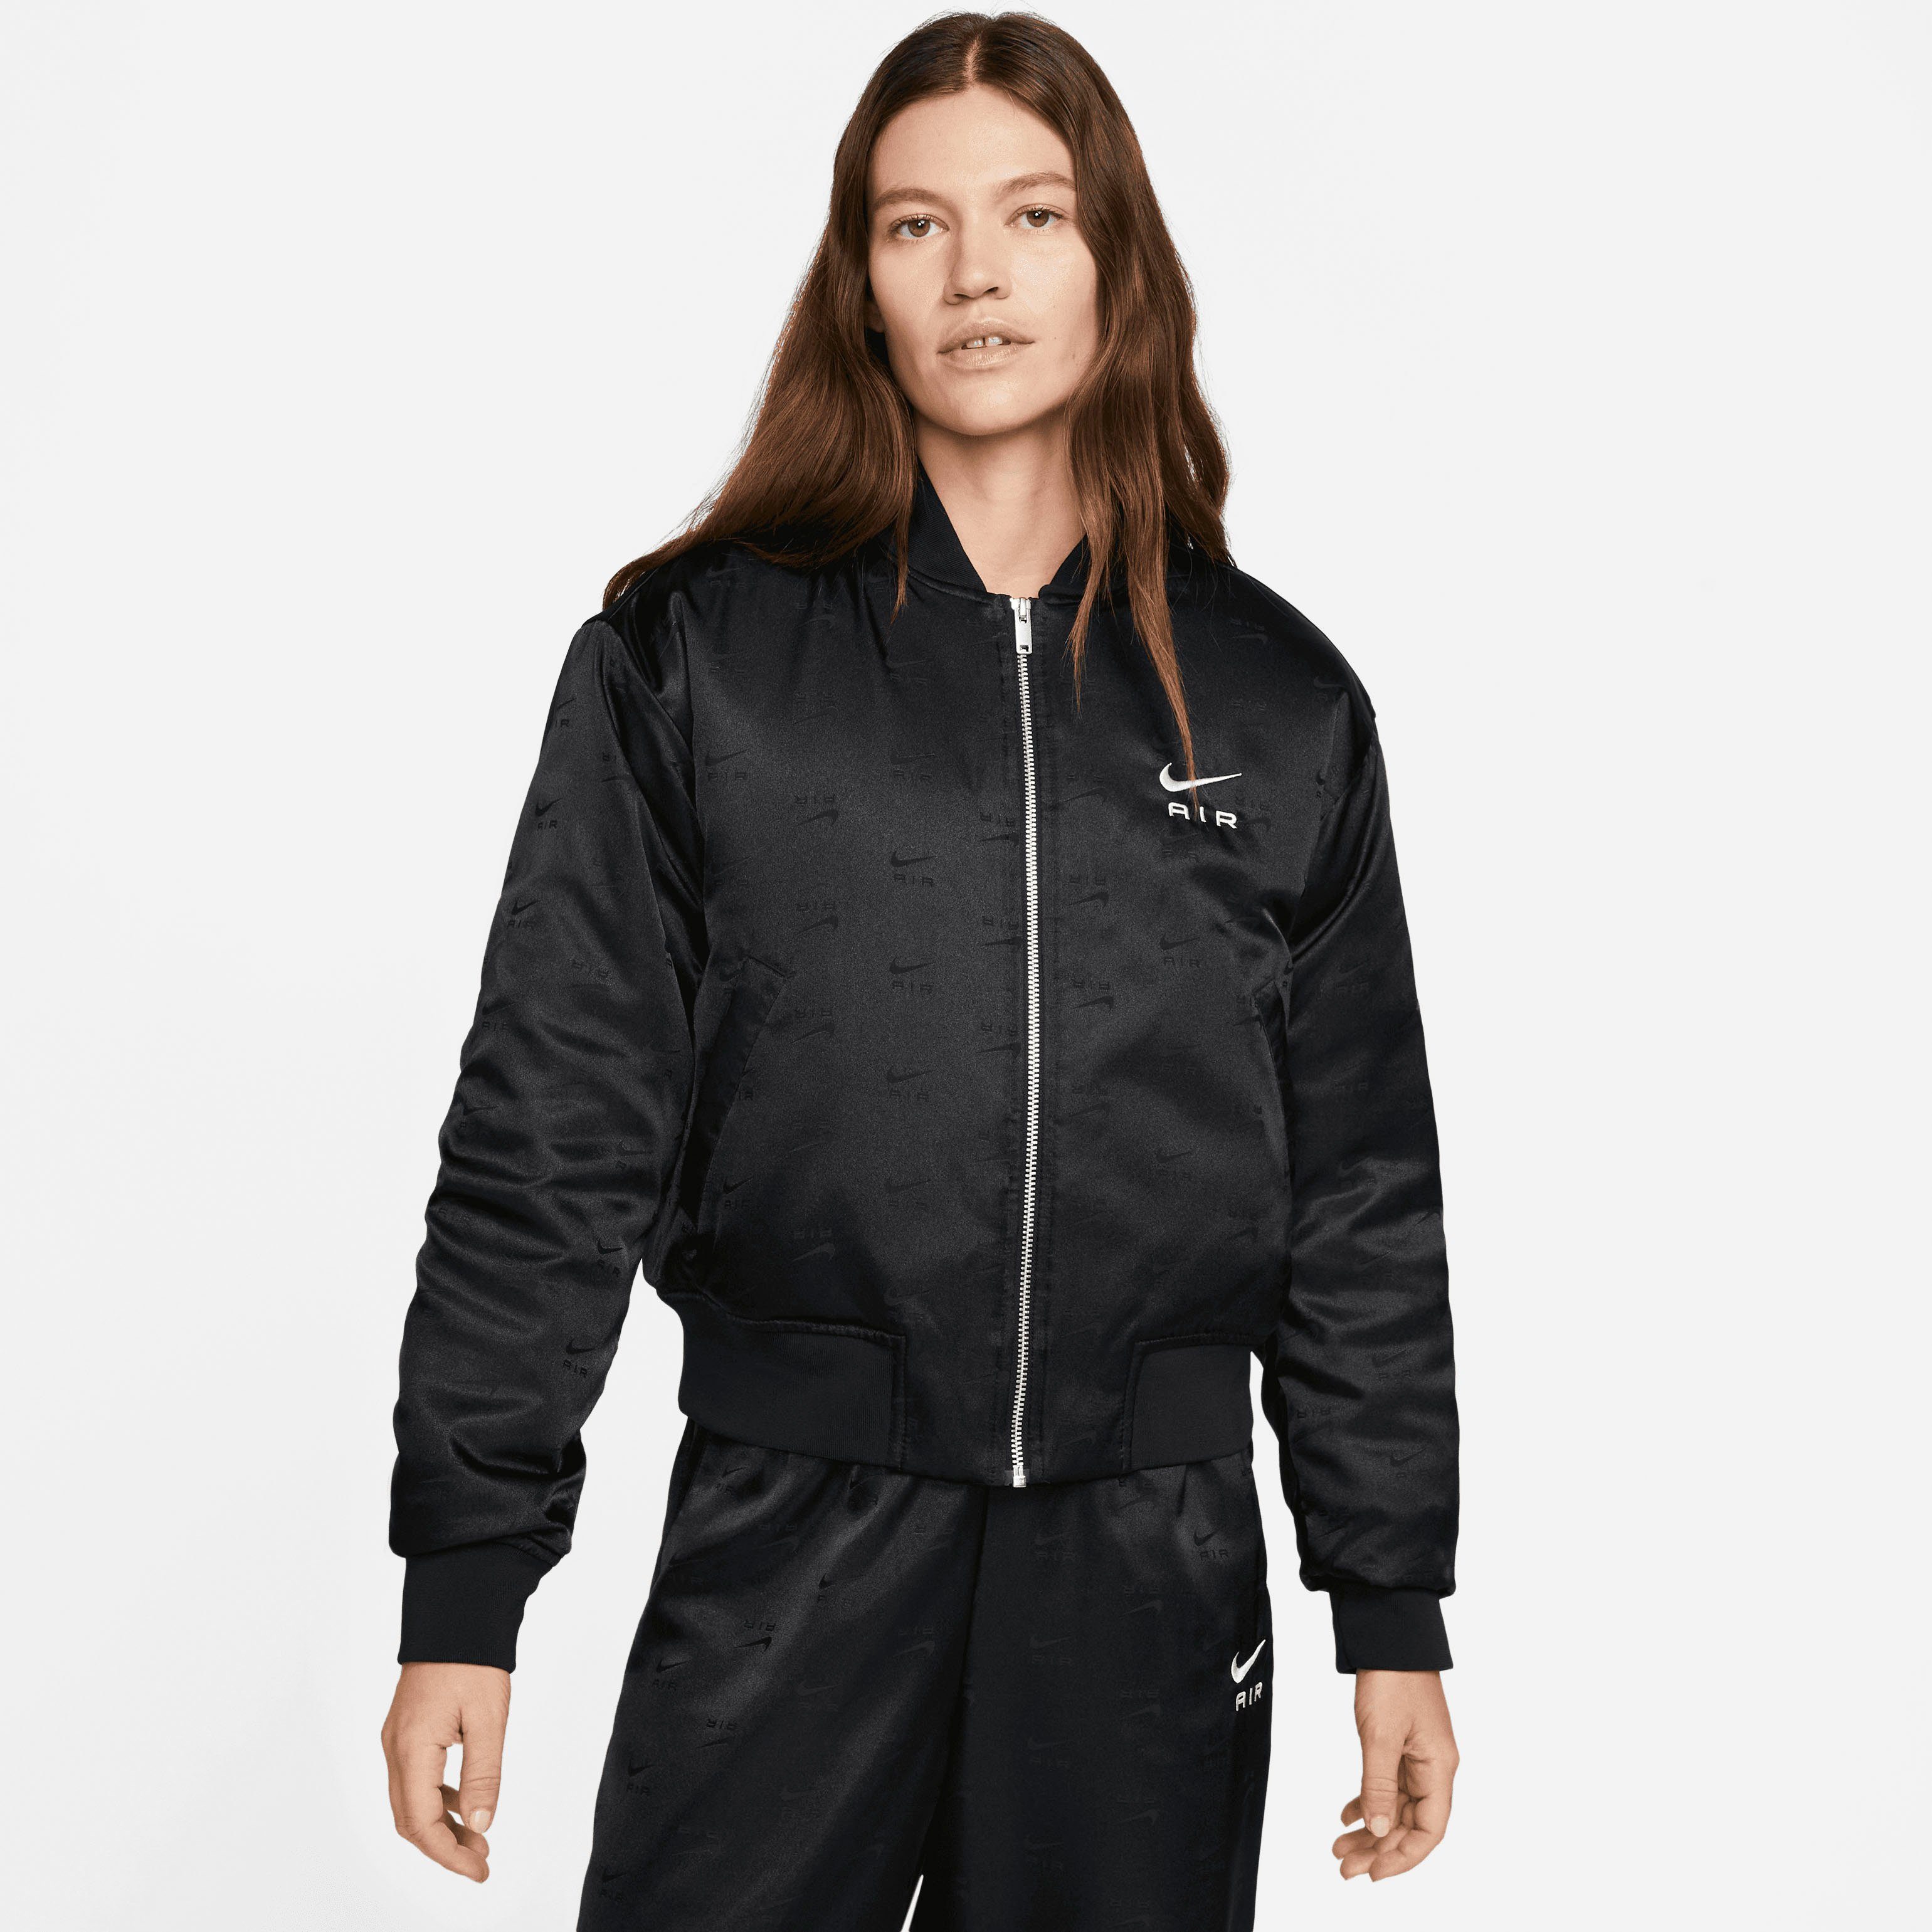 Nike Blouson Air Women's Bomber Jacket Sportswear